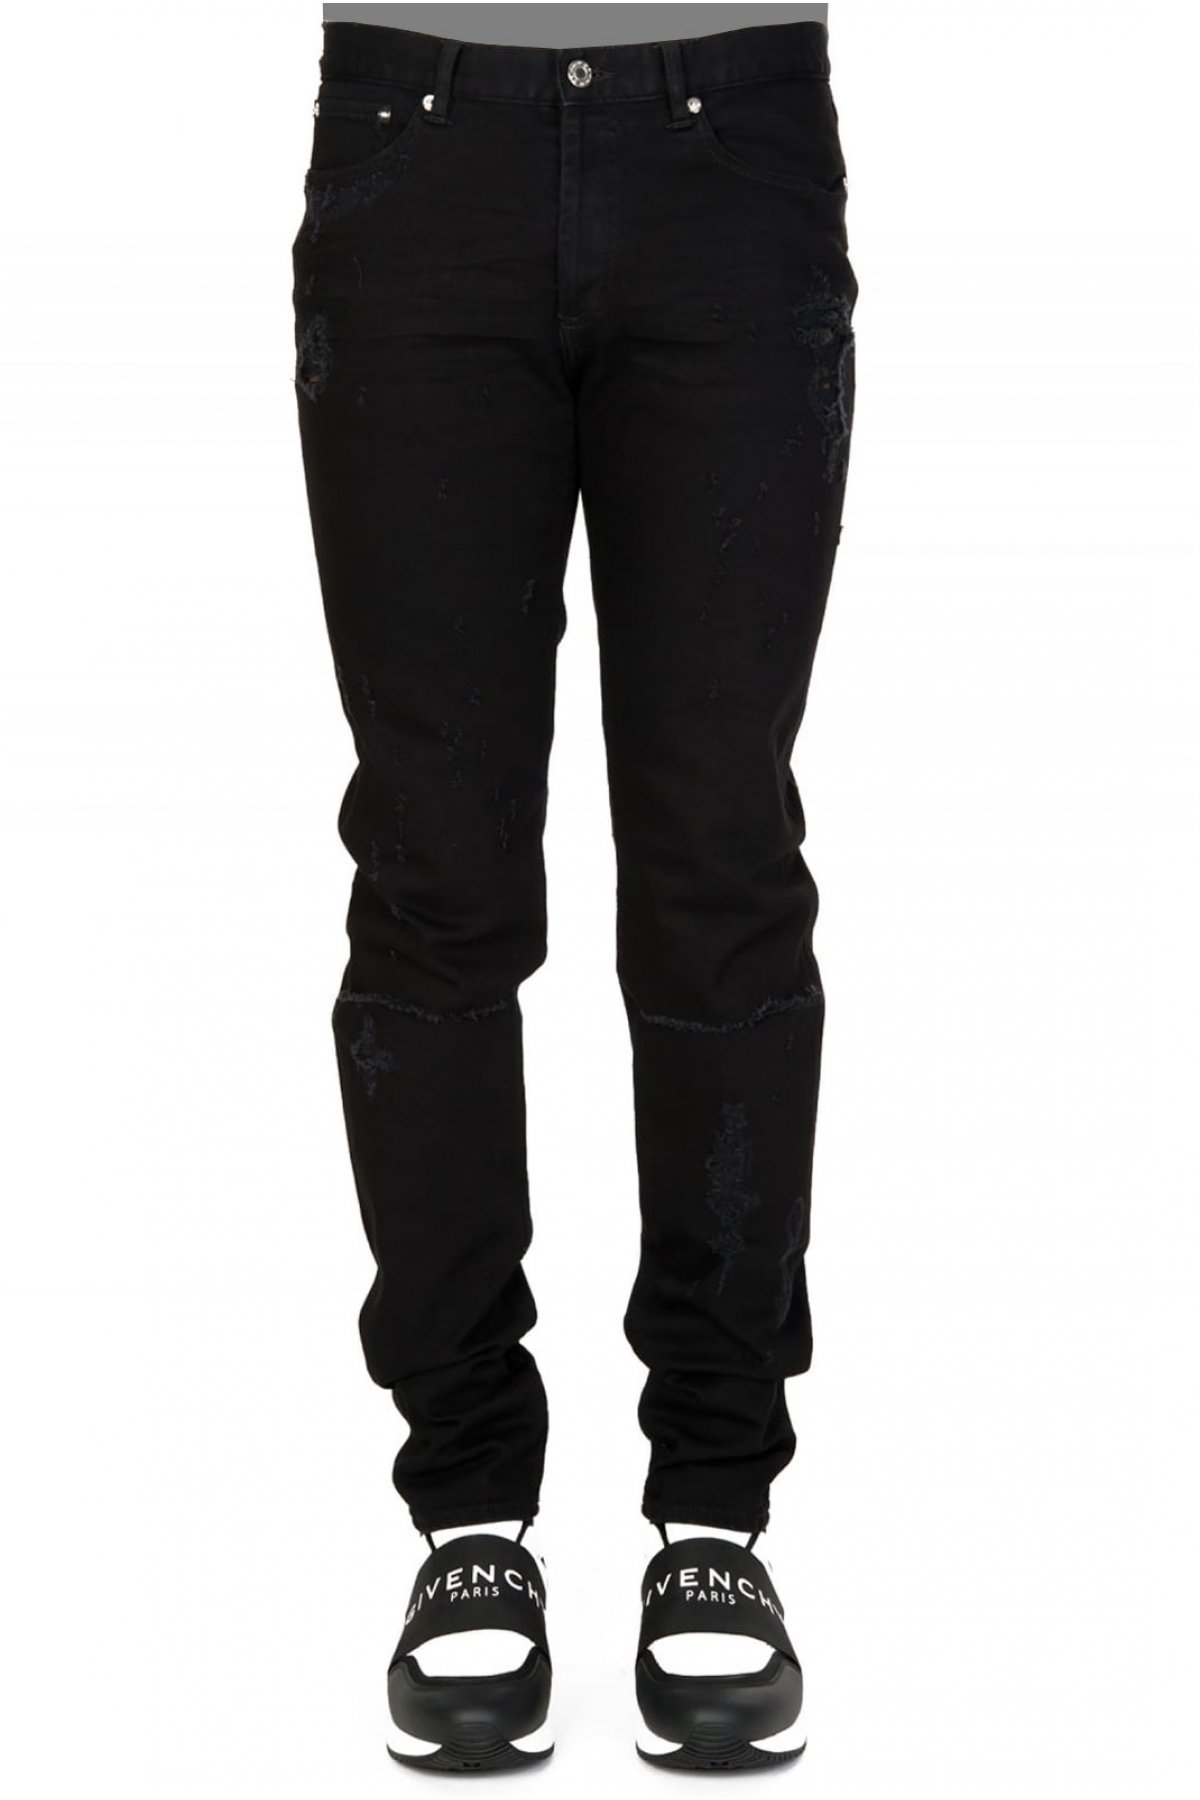 Givenchy BM502D501M džíny černé